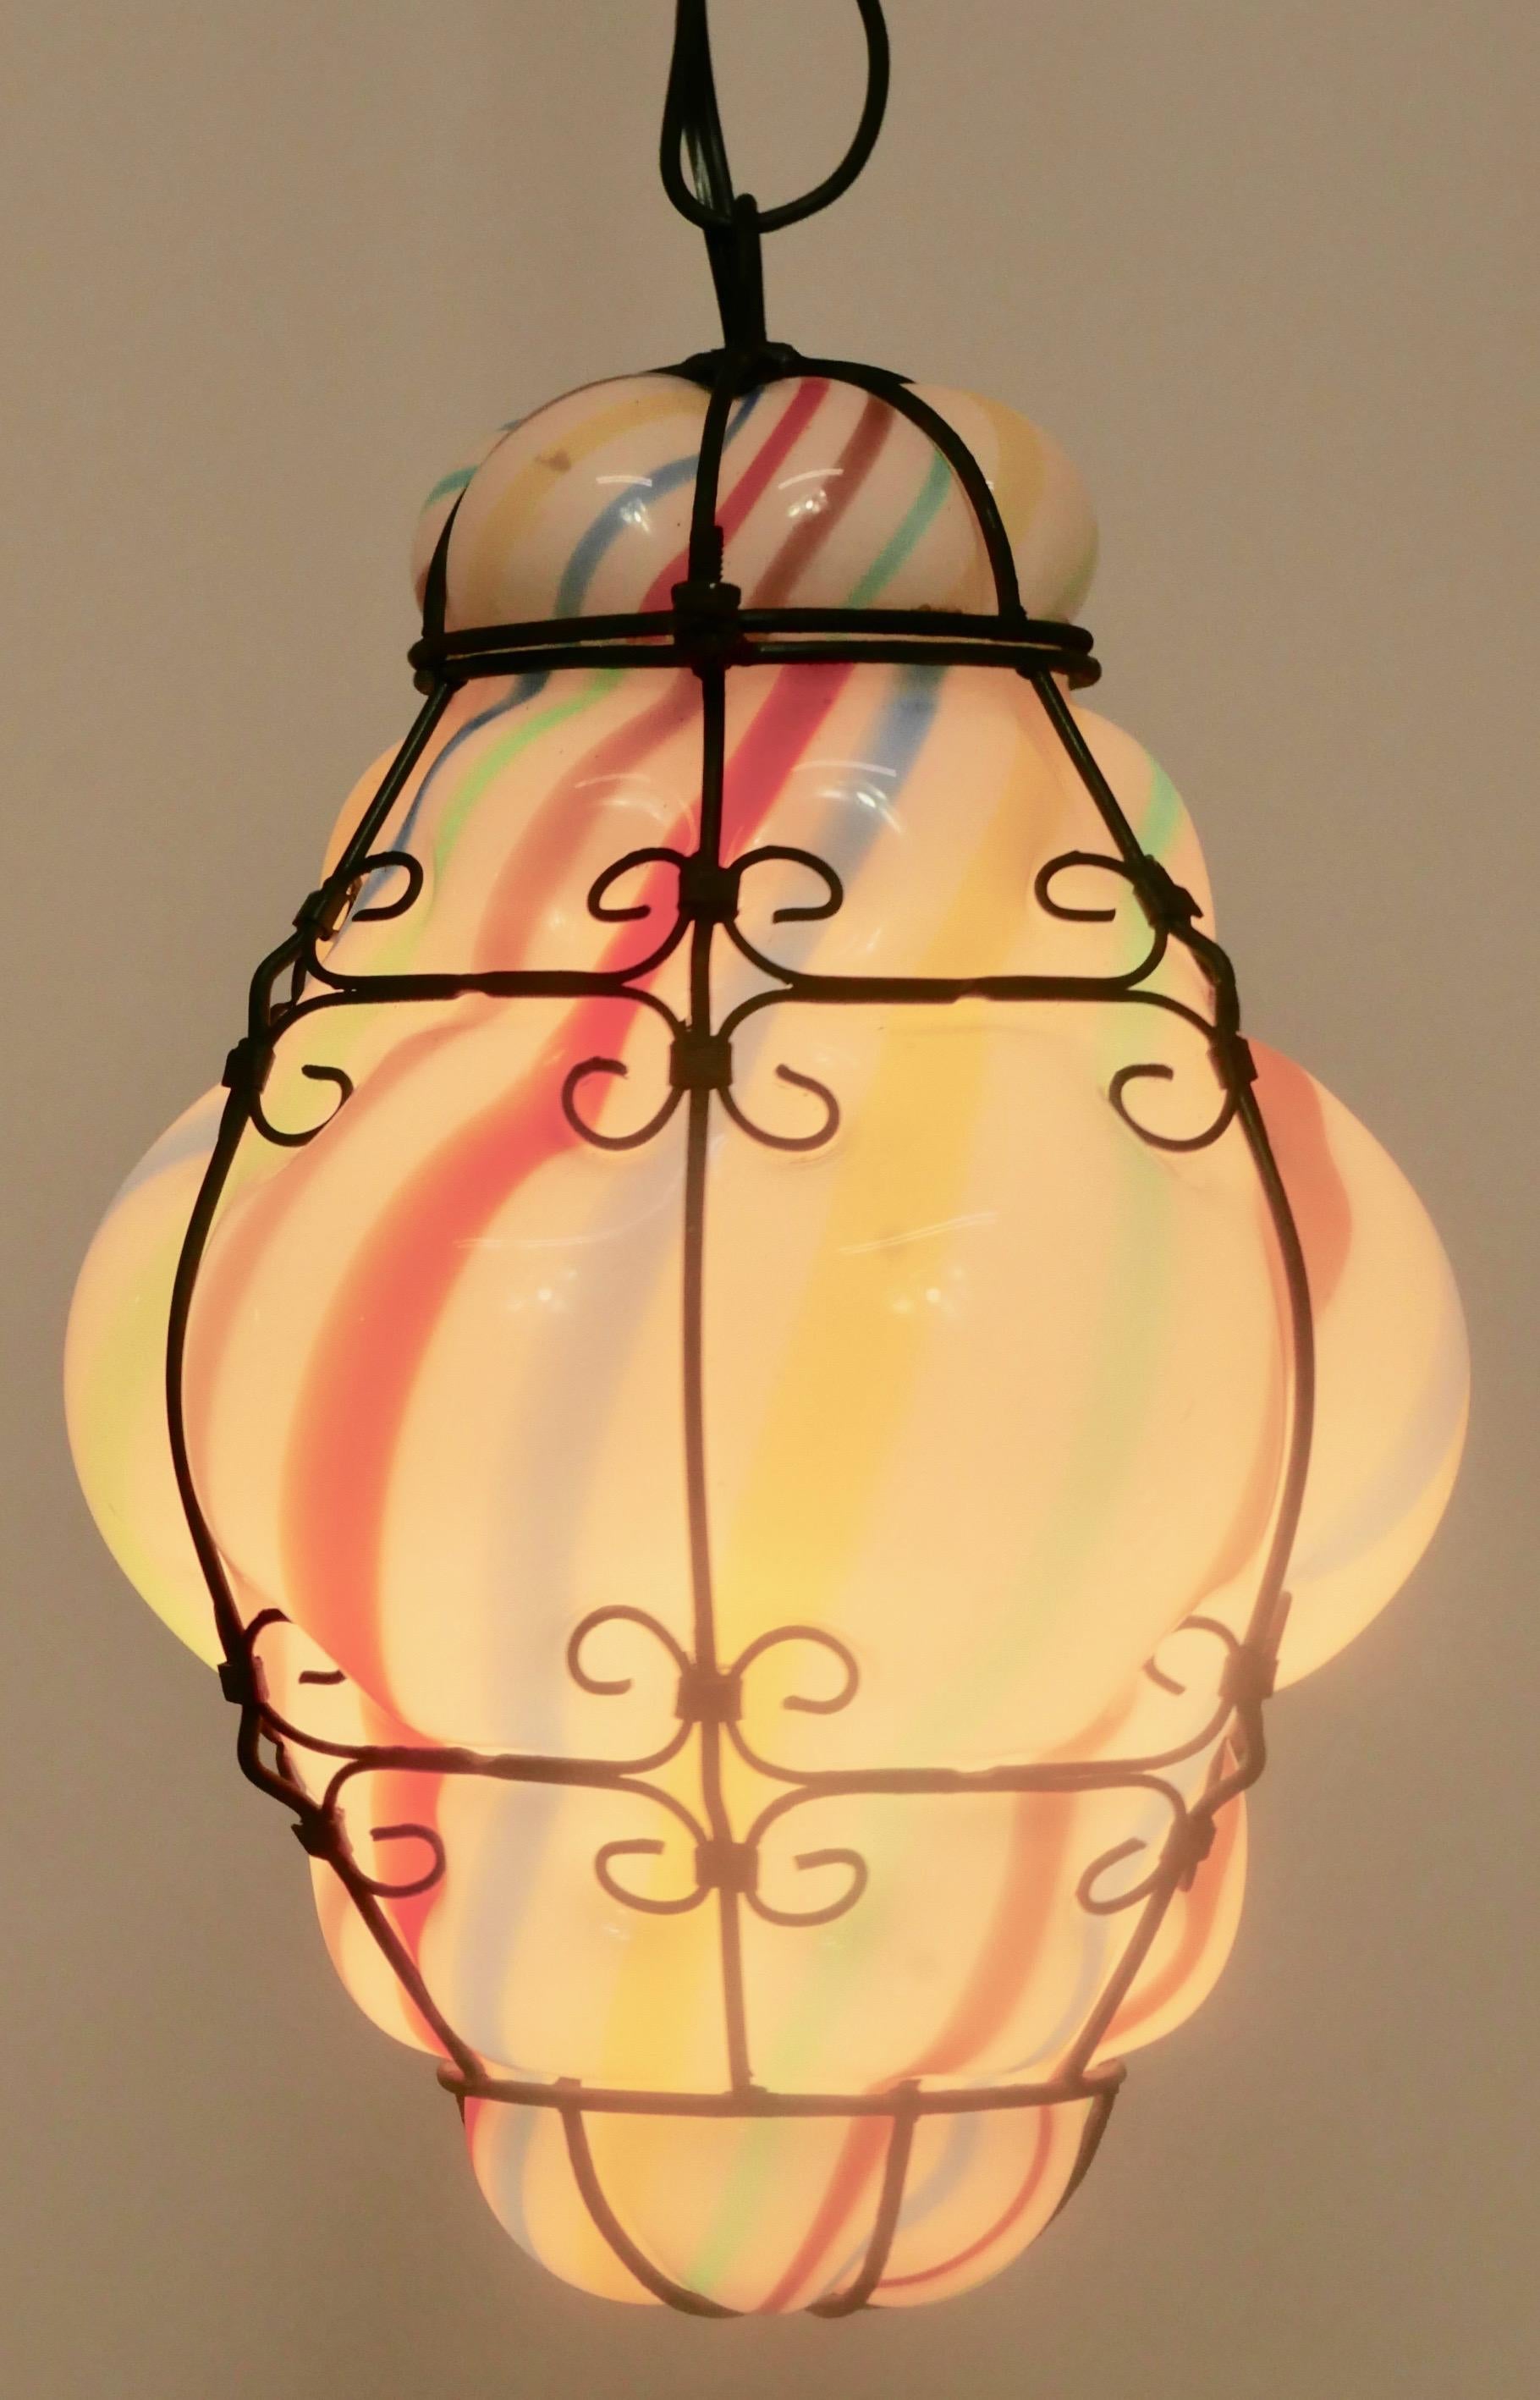 Buntes mundgeblasenes und geformtes gestreiftes Muranoglas in einem Metallkäfig als Hängeleuchte. Die hängende Metallkette kann verstellt werden.
Venedig, Italien
Anfang des 20. Jahrhunderts.